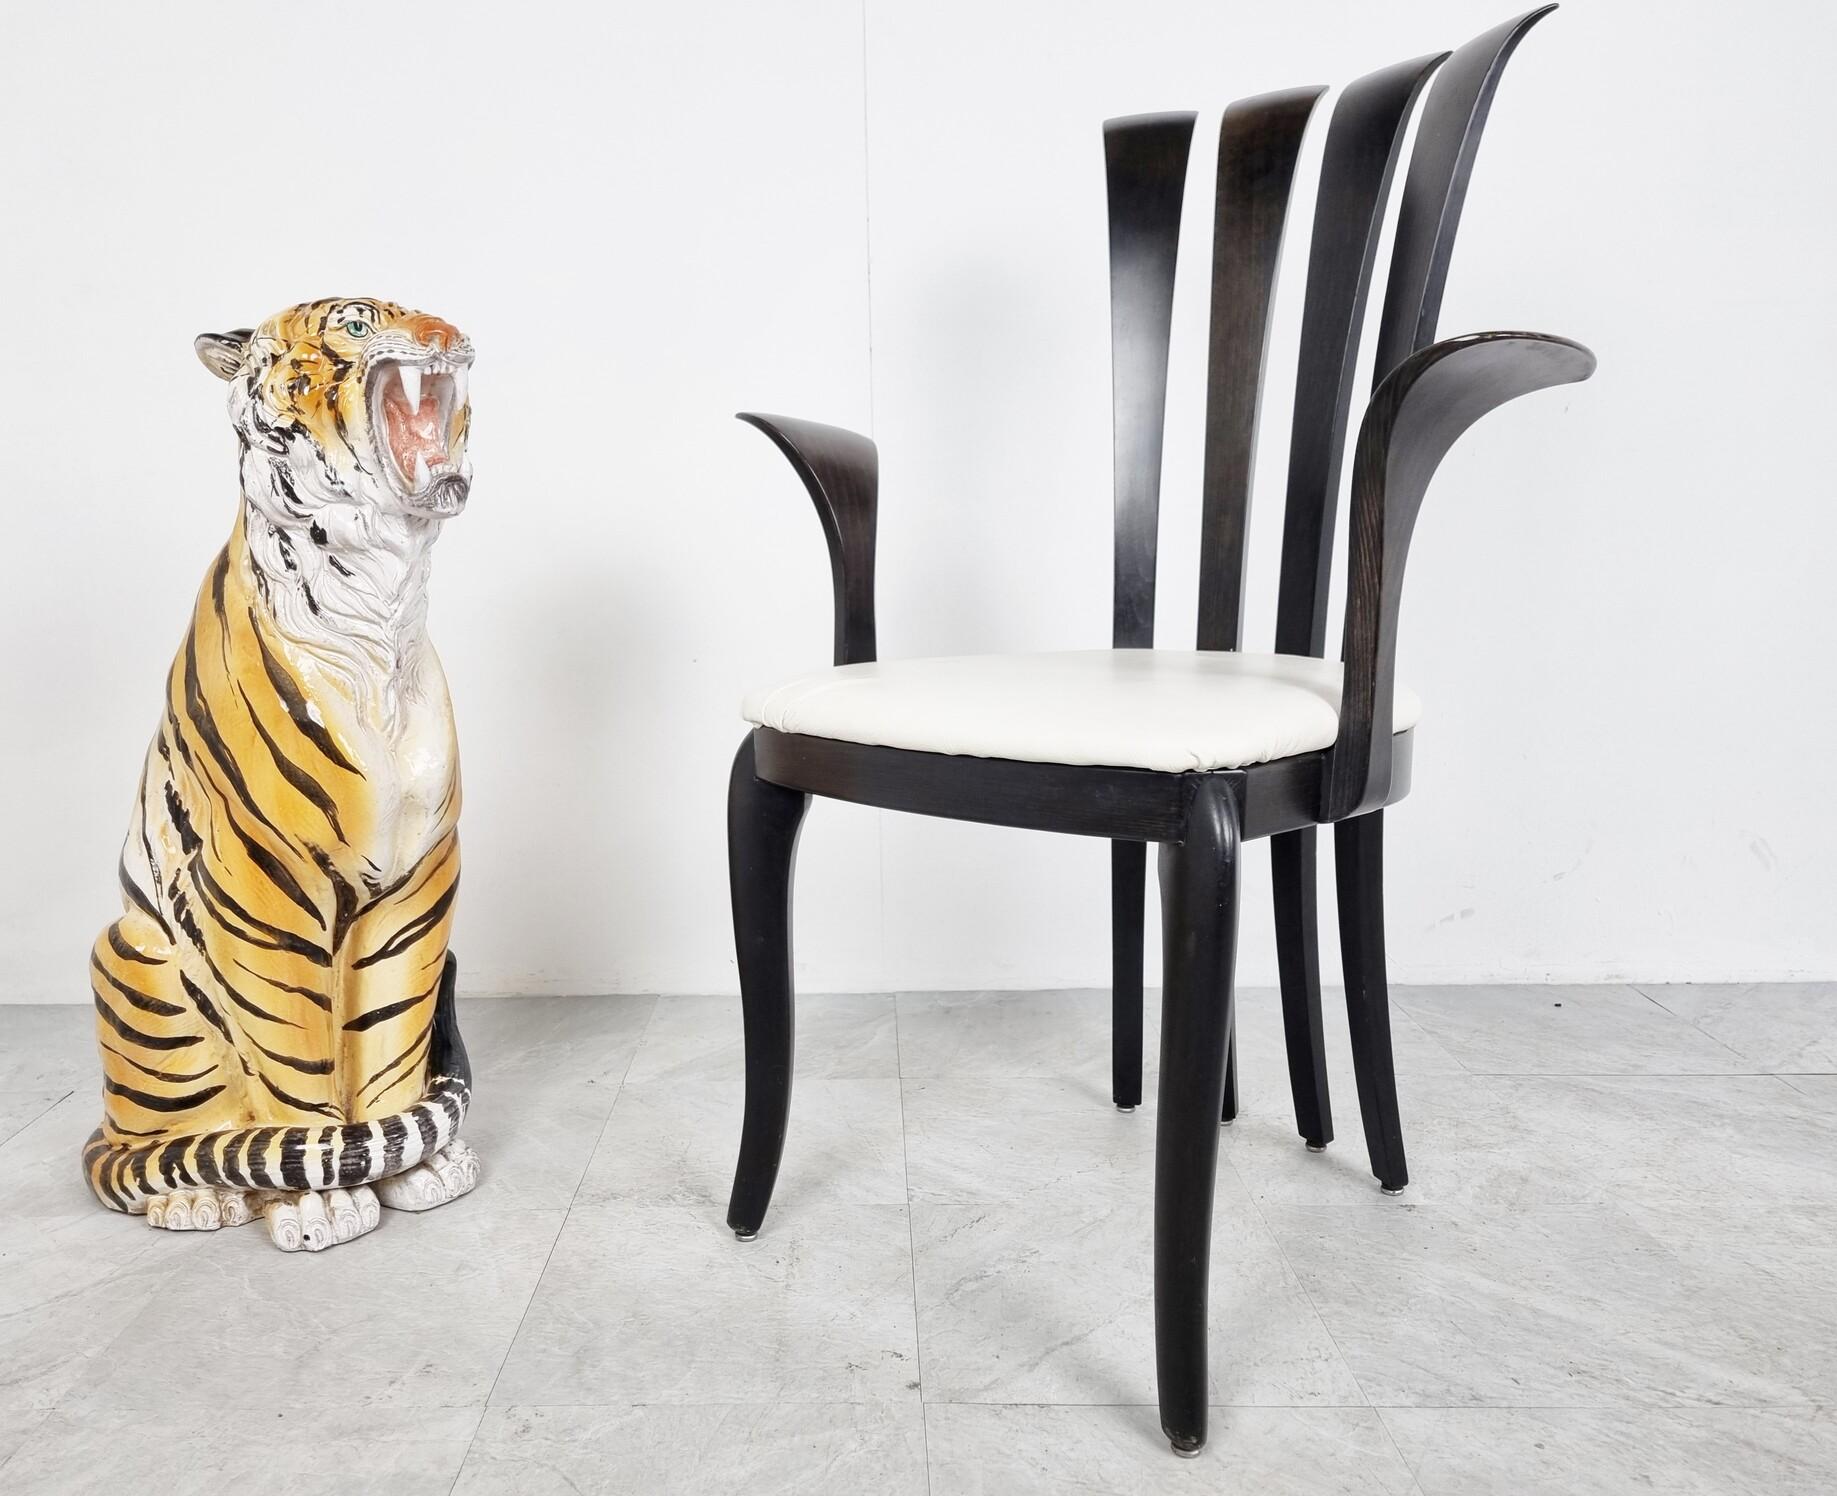 Große handbemalte Tigerfigur aus Keramik, hergestellt in Italien.

Wunderschön detailliert.

1970er Jahre - Italien

Sehr guter Zustand.

Abmessungen: 
Höhe: 80cm/31.49